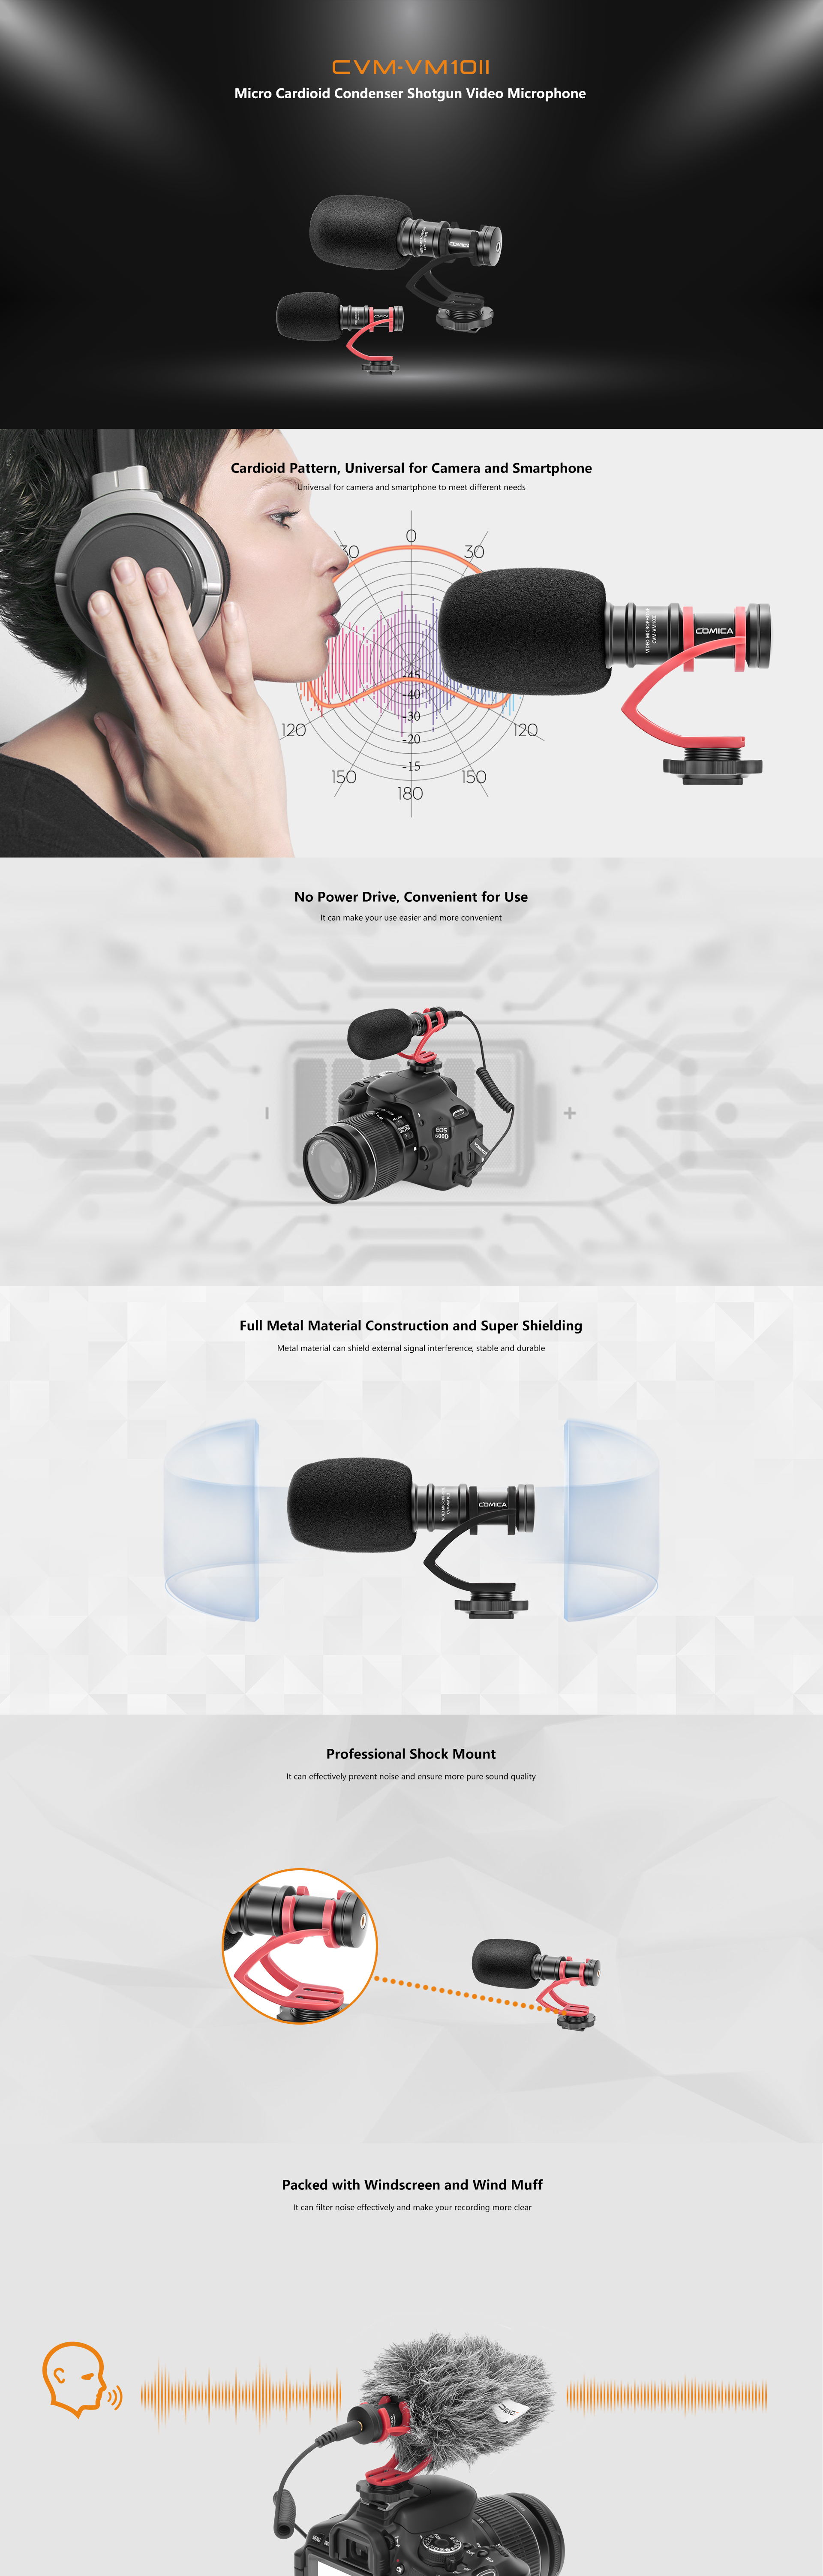 VM10II Mini Condenser Camera